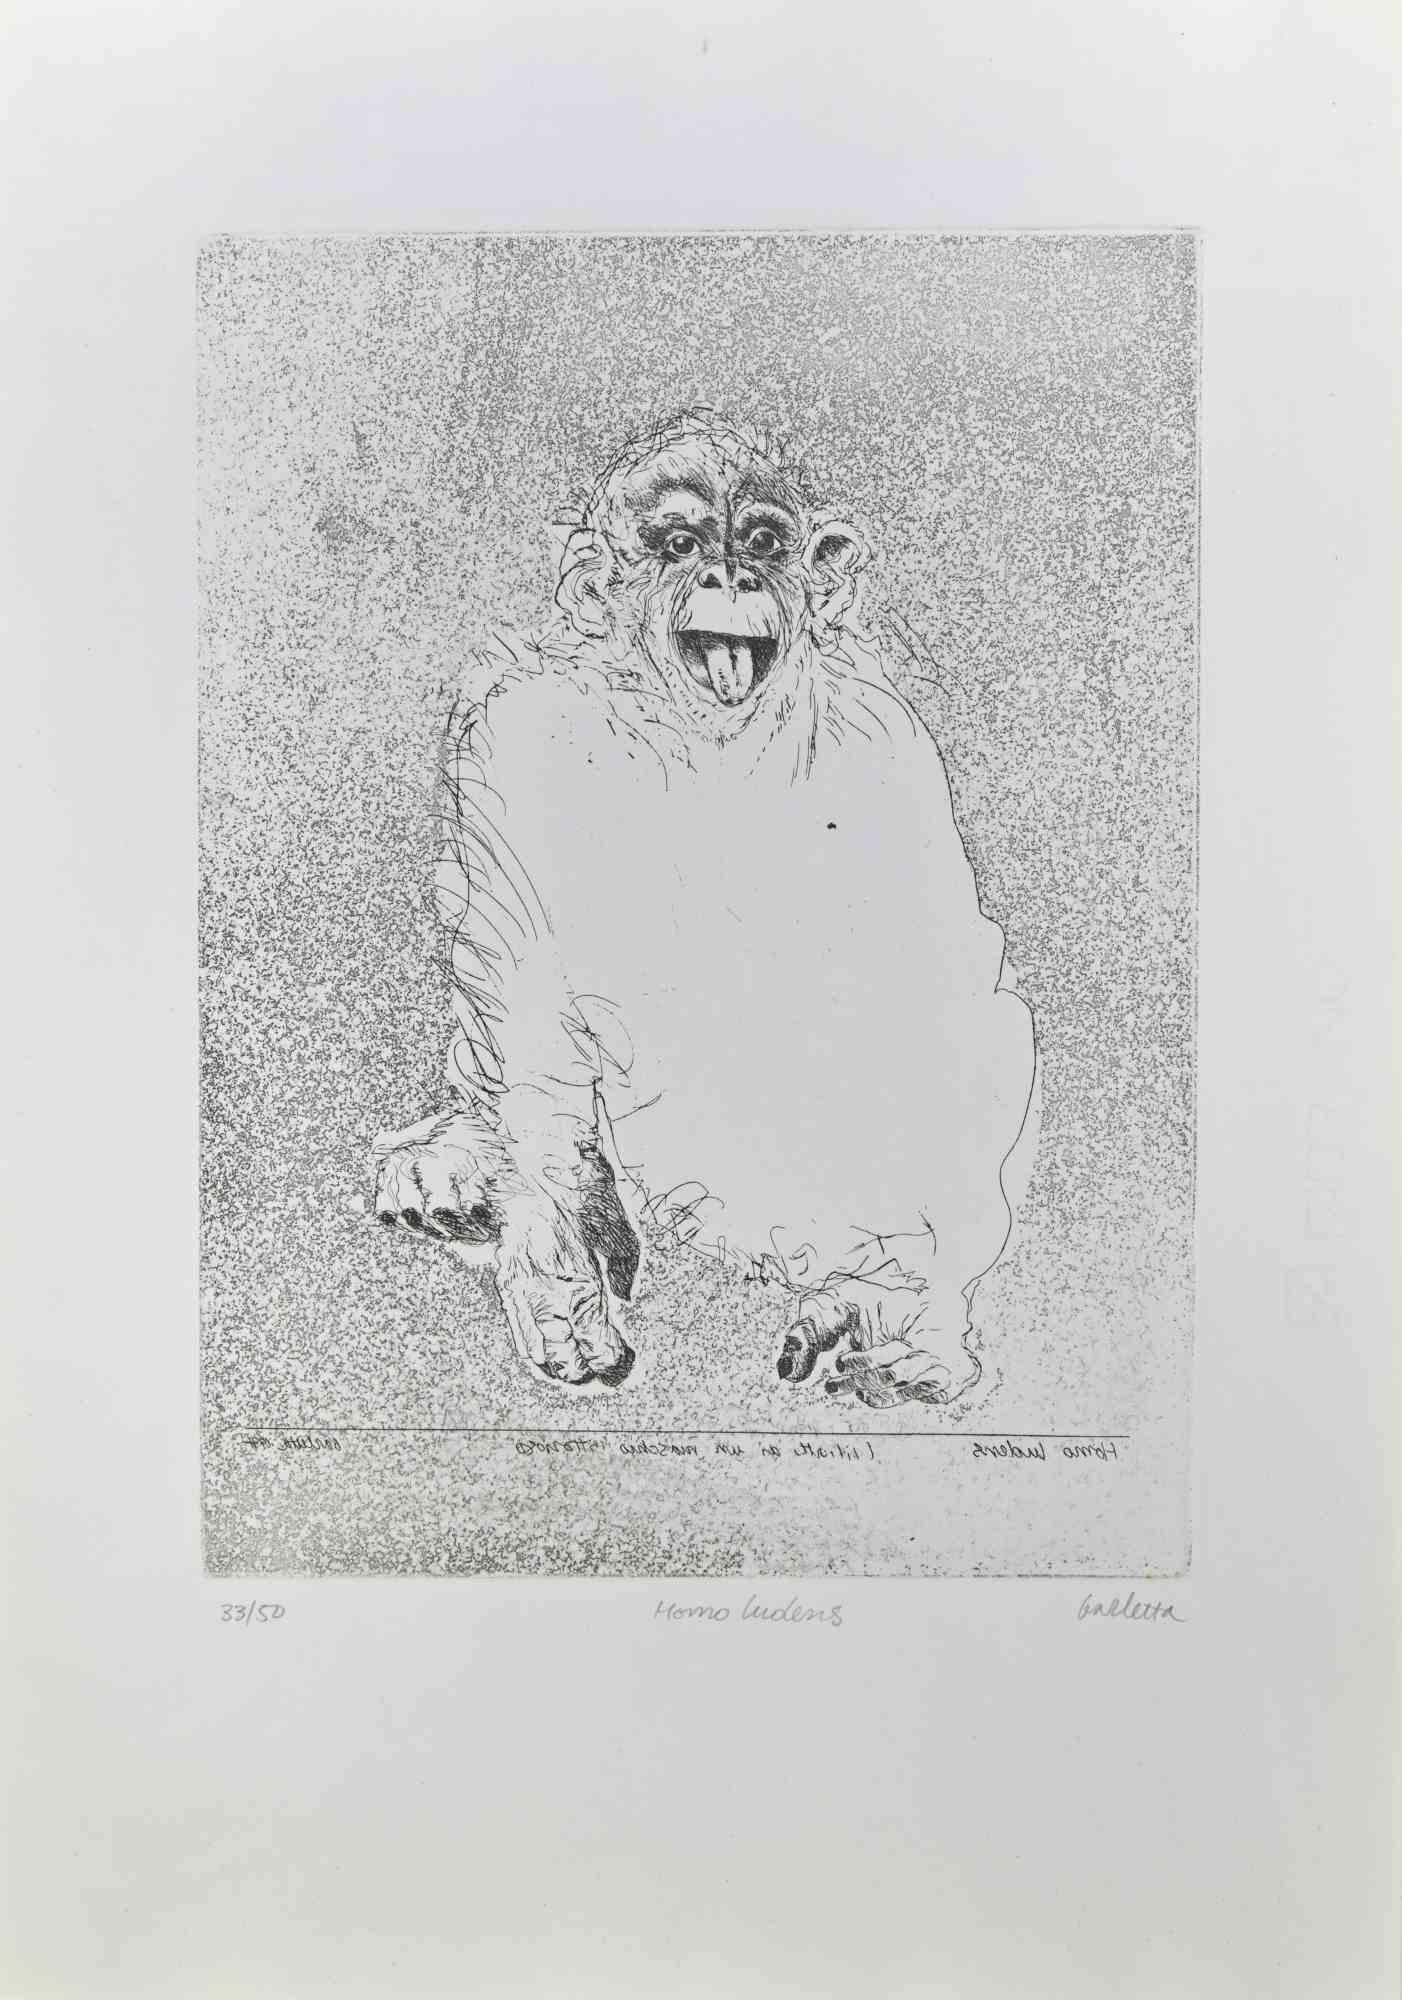 Homo Ludens  est une gravure réalisée par  Sergio Barletta en 1991.

Signé à la main  en bas à droite au crayon, et titré en bas au centre "Homo Ludens". Numérotée en bas à gauche, issue d'une édition de 50 tirages.

Bonnes conditions.

Sergio